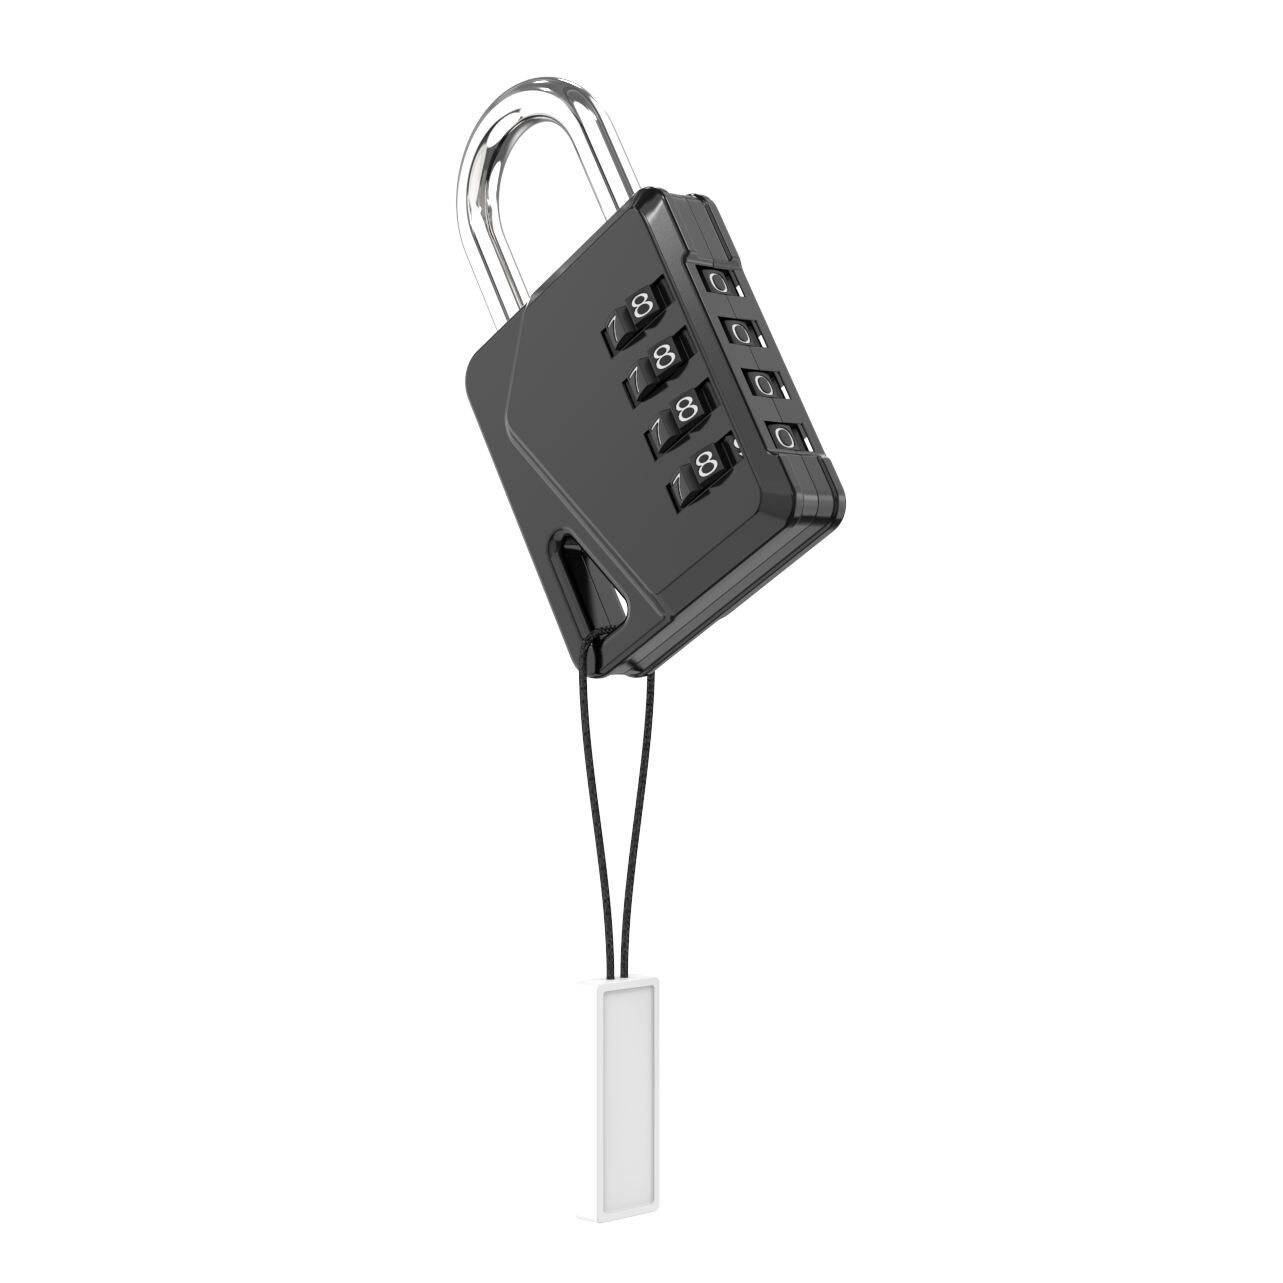 Buy Wholesale China Wholesale Combination Locks Combination Padlock Heavy  Duty Code Padlocks 04c Combination Lock For Gym Locker Drawer & Combination  Locks at USD 0.75